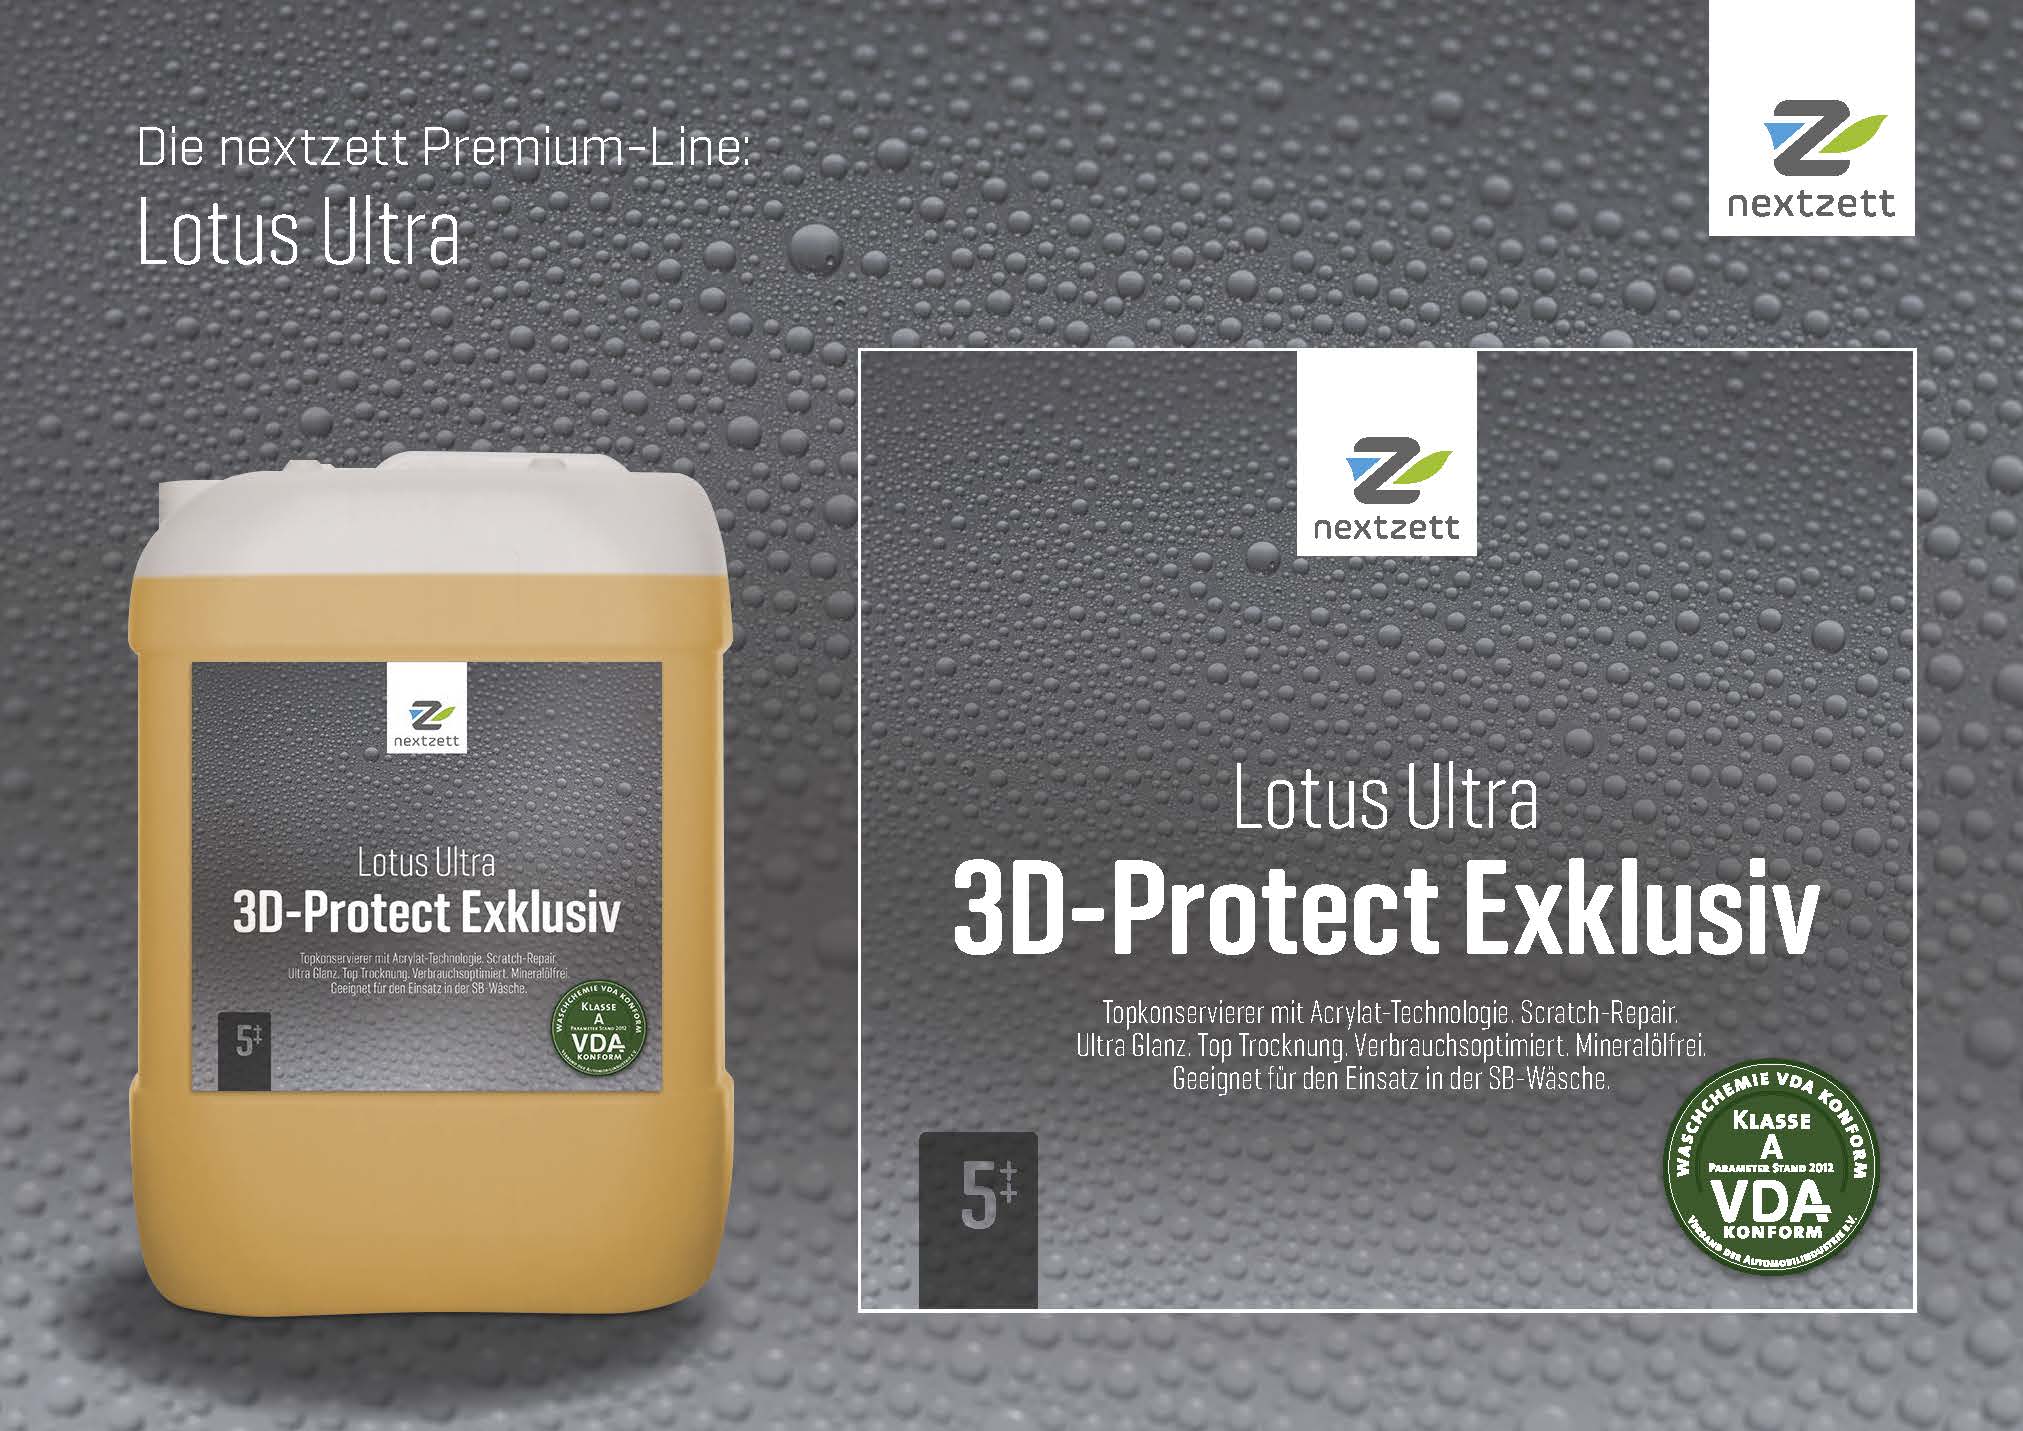 Nextzett Lotus Ultra 3D-Protekt Exklusiv - Flyer